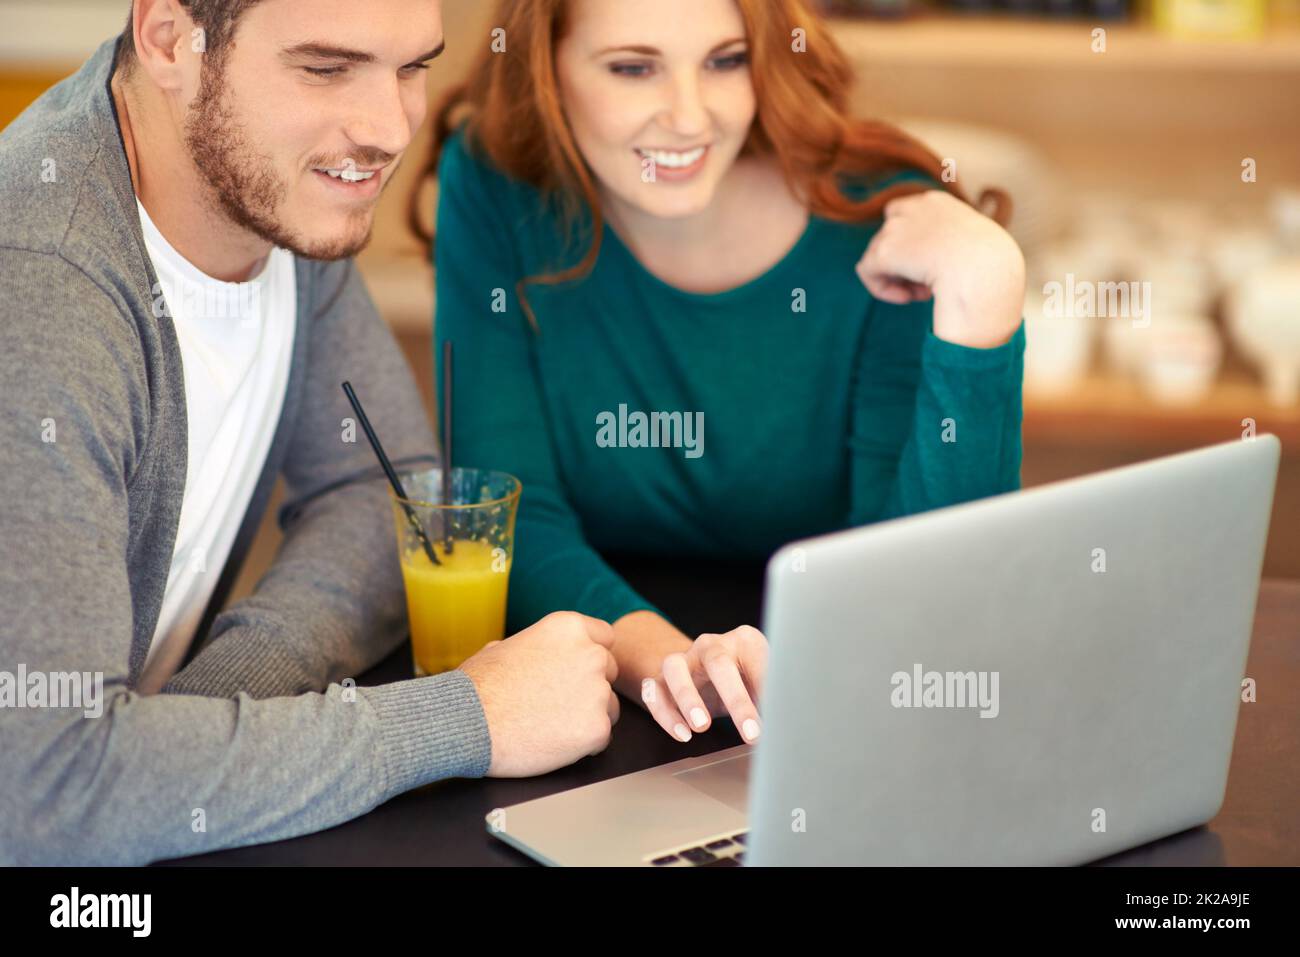 Ils partagent les mêmes intérêts. Photo d'un jeune couple utilisant un ordinateur portable tout en prenant un verre dans un café. Banque D'Images